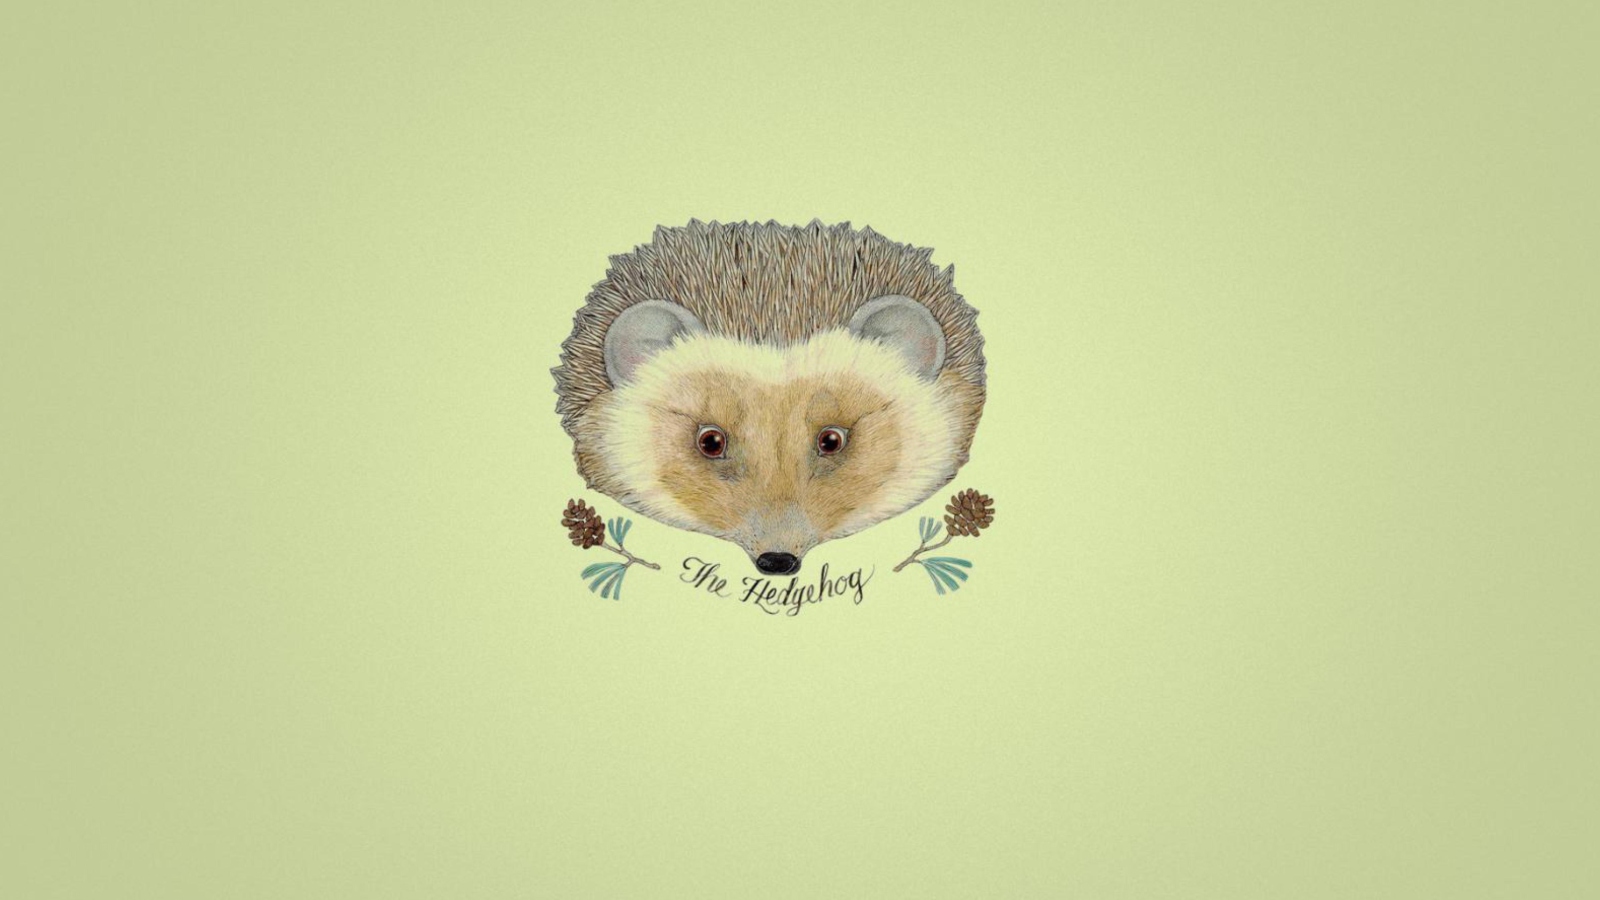 Hedgehog wallpaper 1600x900